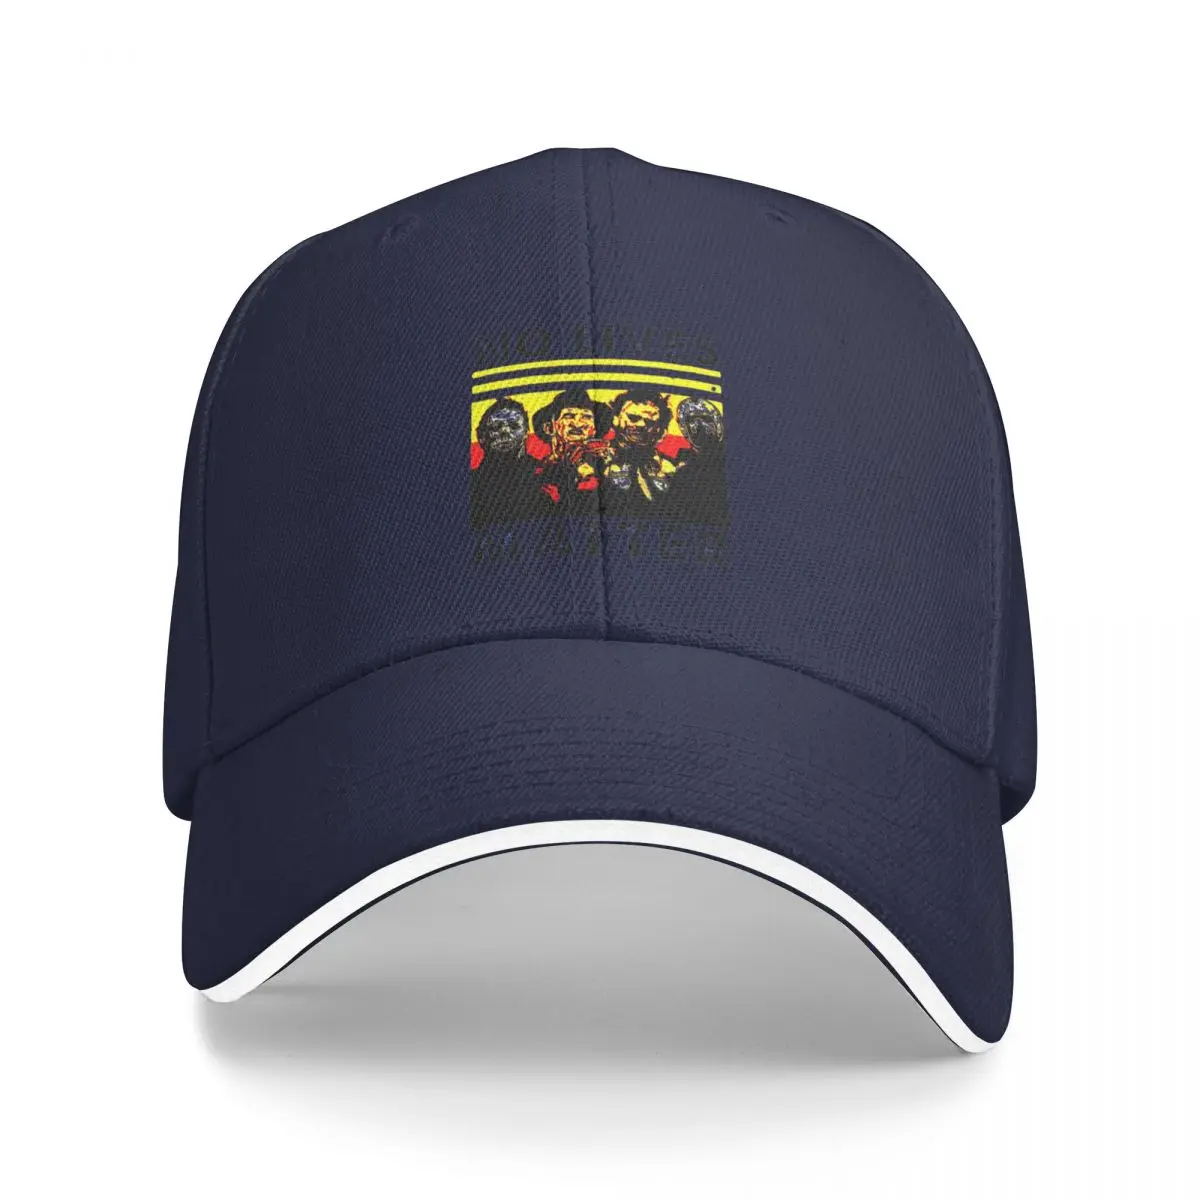 

No Lives Matter Baseball Cap Sunhat Hat Luxury Brand Rugby Male Cap Women'S